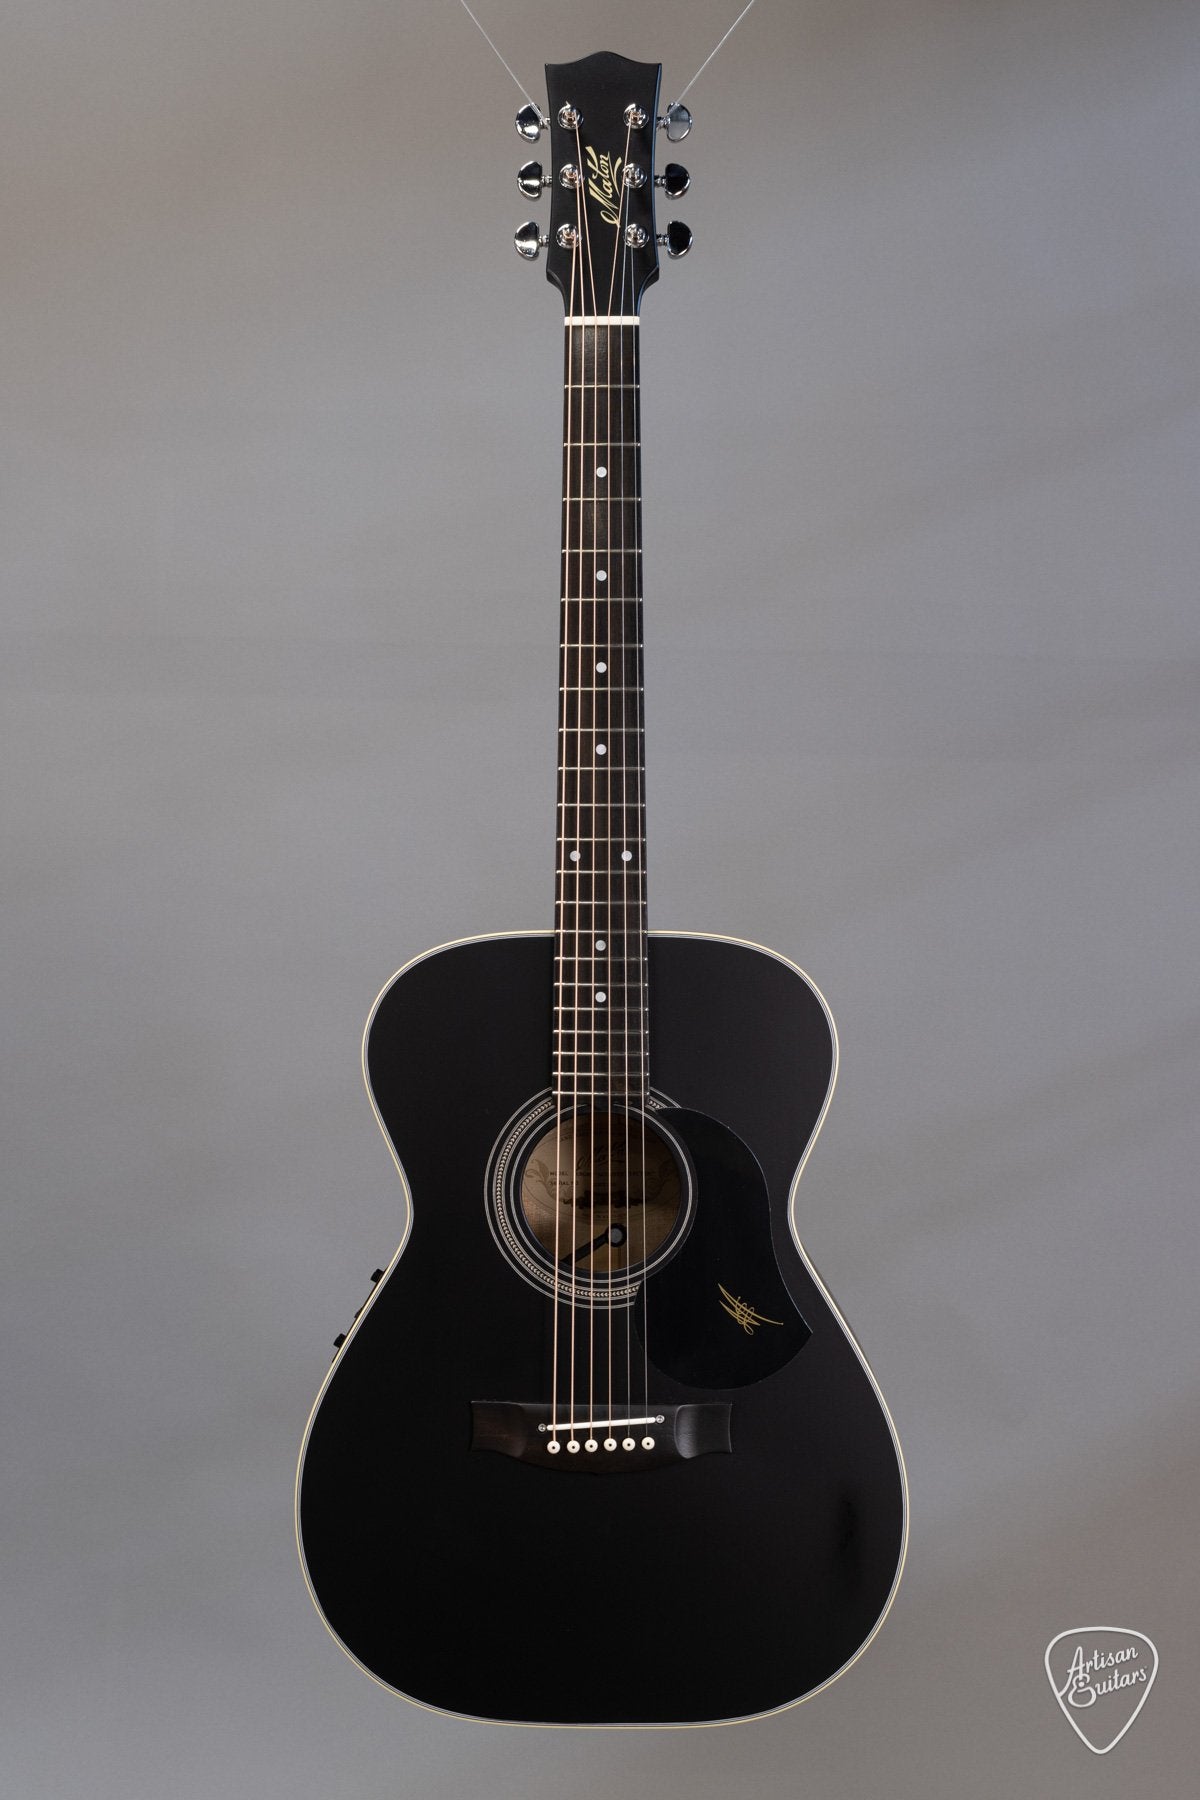 Maton Guitars EBG808 - Custom Jet Black Satin Nitro Finish - 15078 - Artisan Guitars